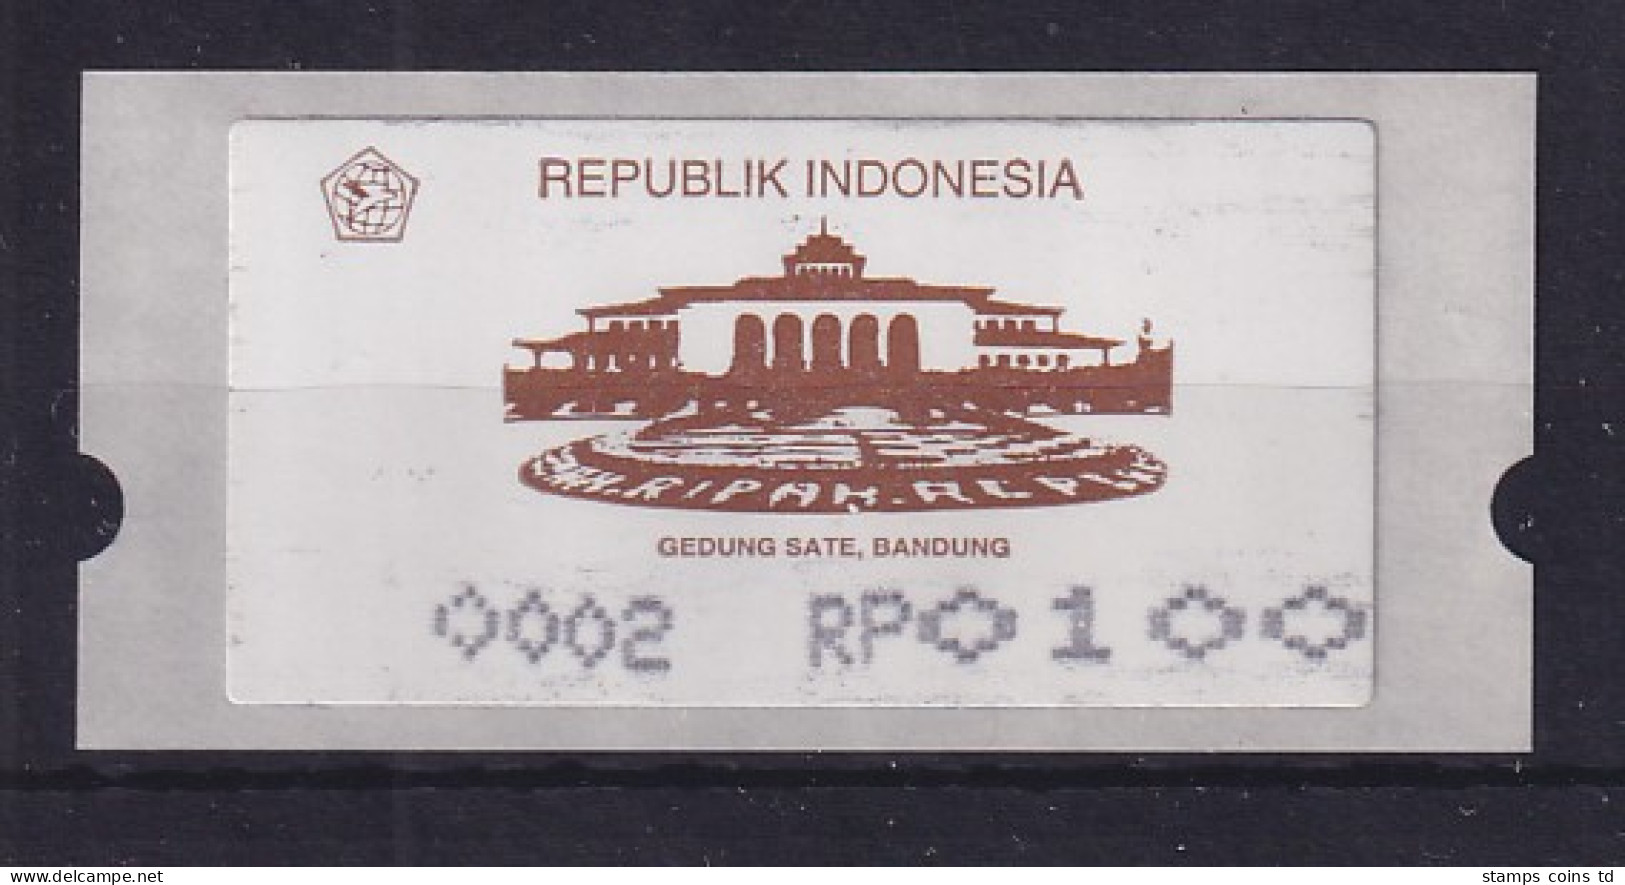 Indonesien ATM 1. Ausgabe 1994 , Aut.Nr. 0002 Wert RP 0100 **  - Indonésie